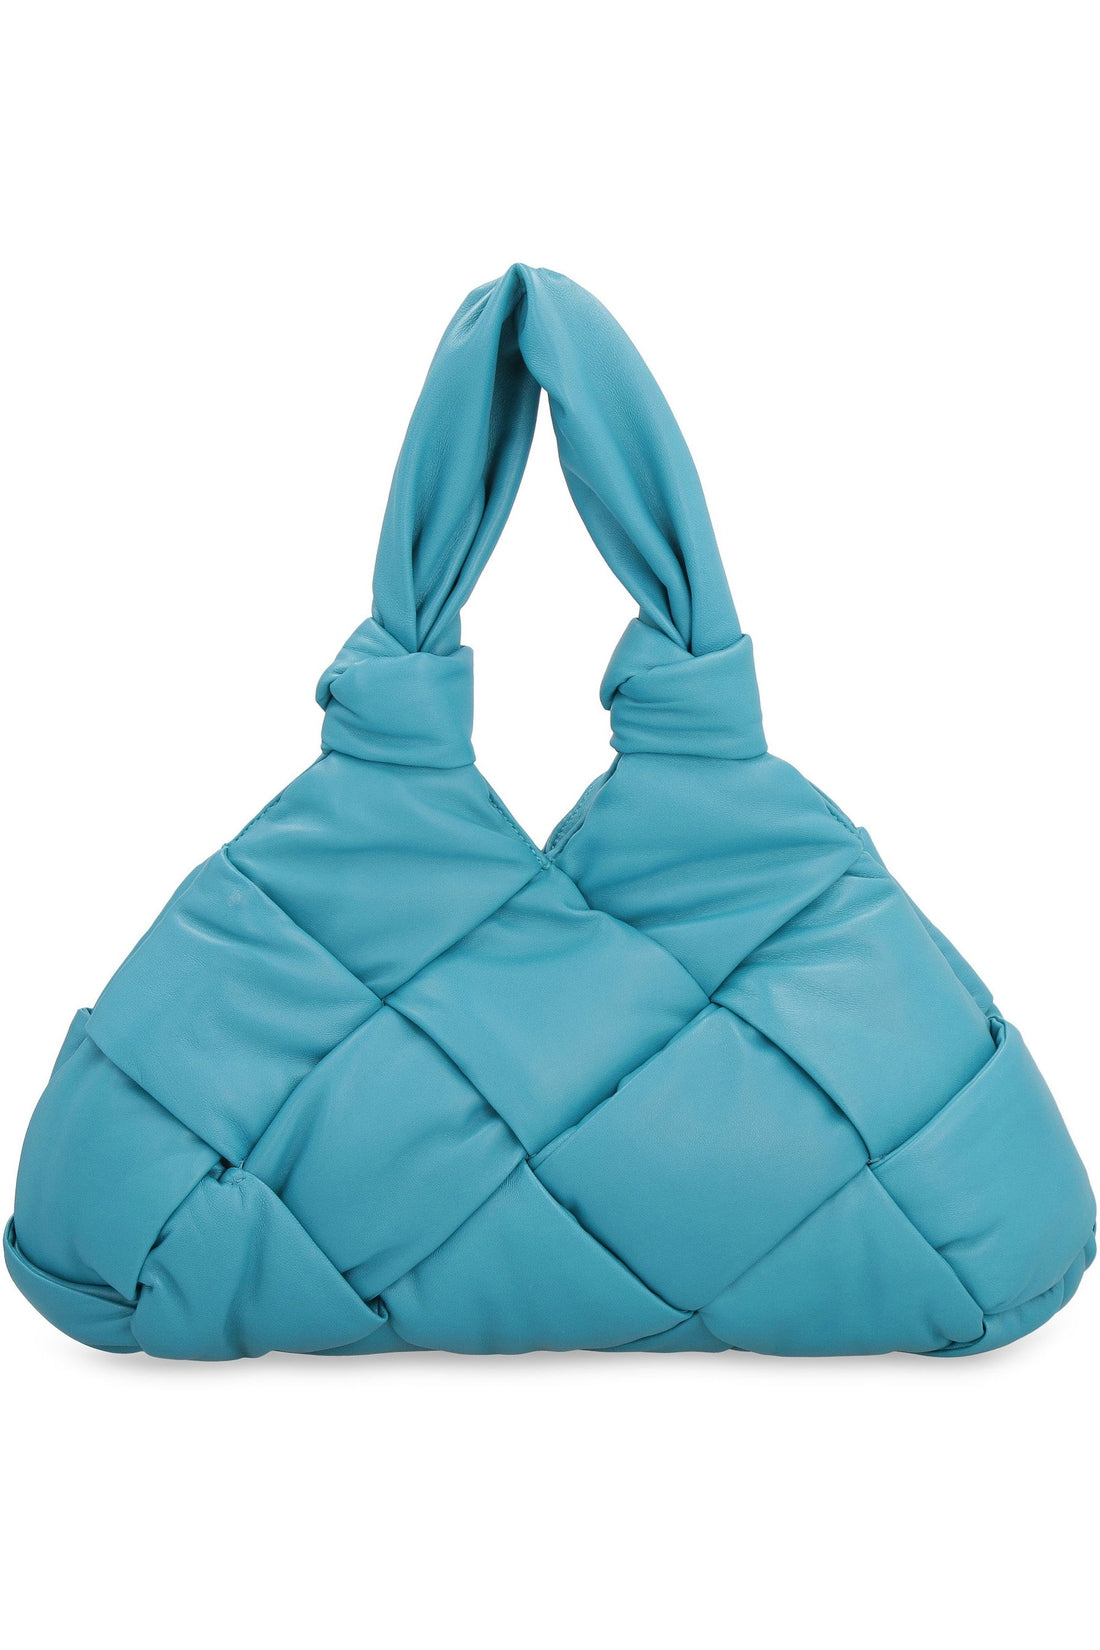 Bottega Veneta-OUTLET-SALE-Padded Lock leather shoulder bag-ARCHIVIST